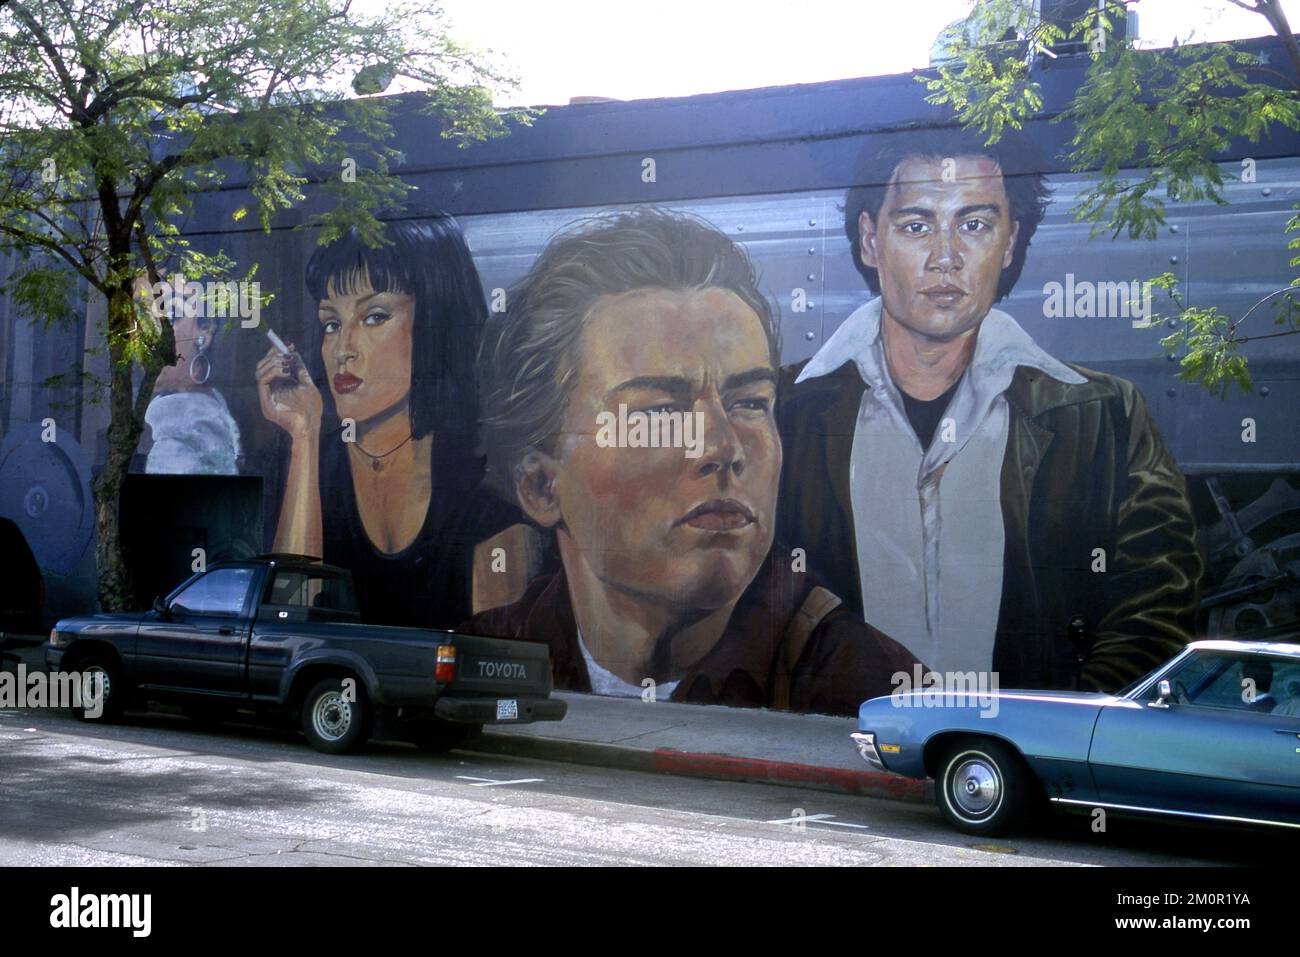 Fresque représentant de jeunes stars hollywoodiennes, dont Leonard DiCaprio et Uma Thurman dans le quartier de Los Feliz à Hollywood, Californie Banque D'Images